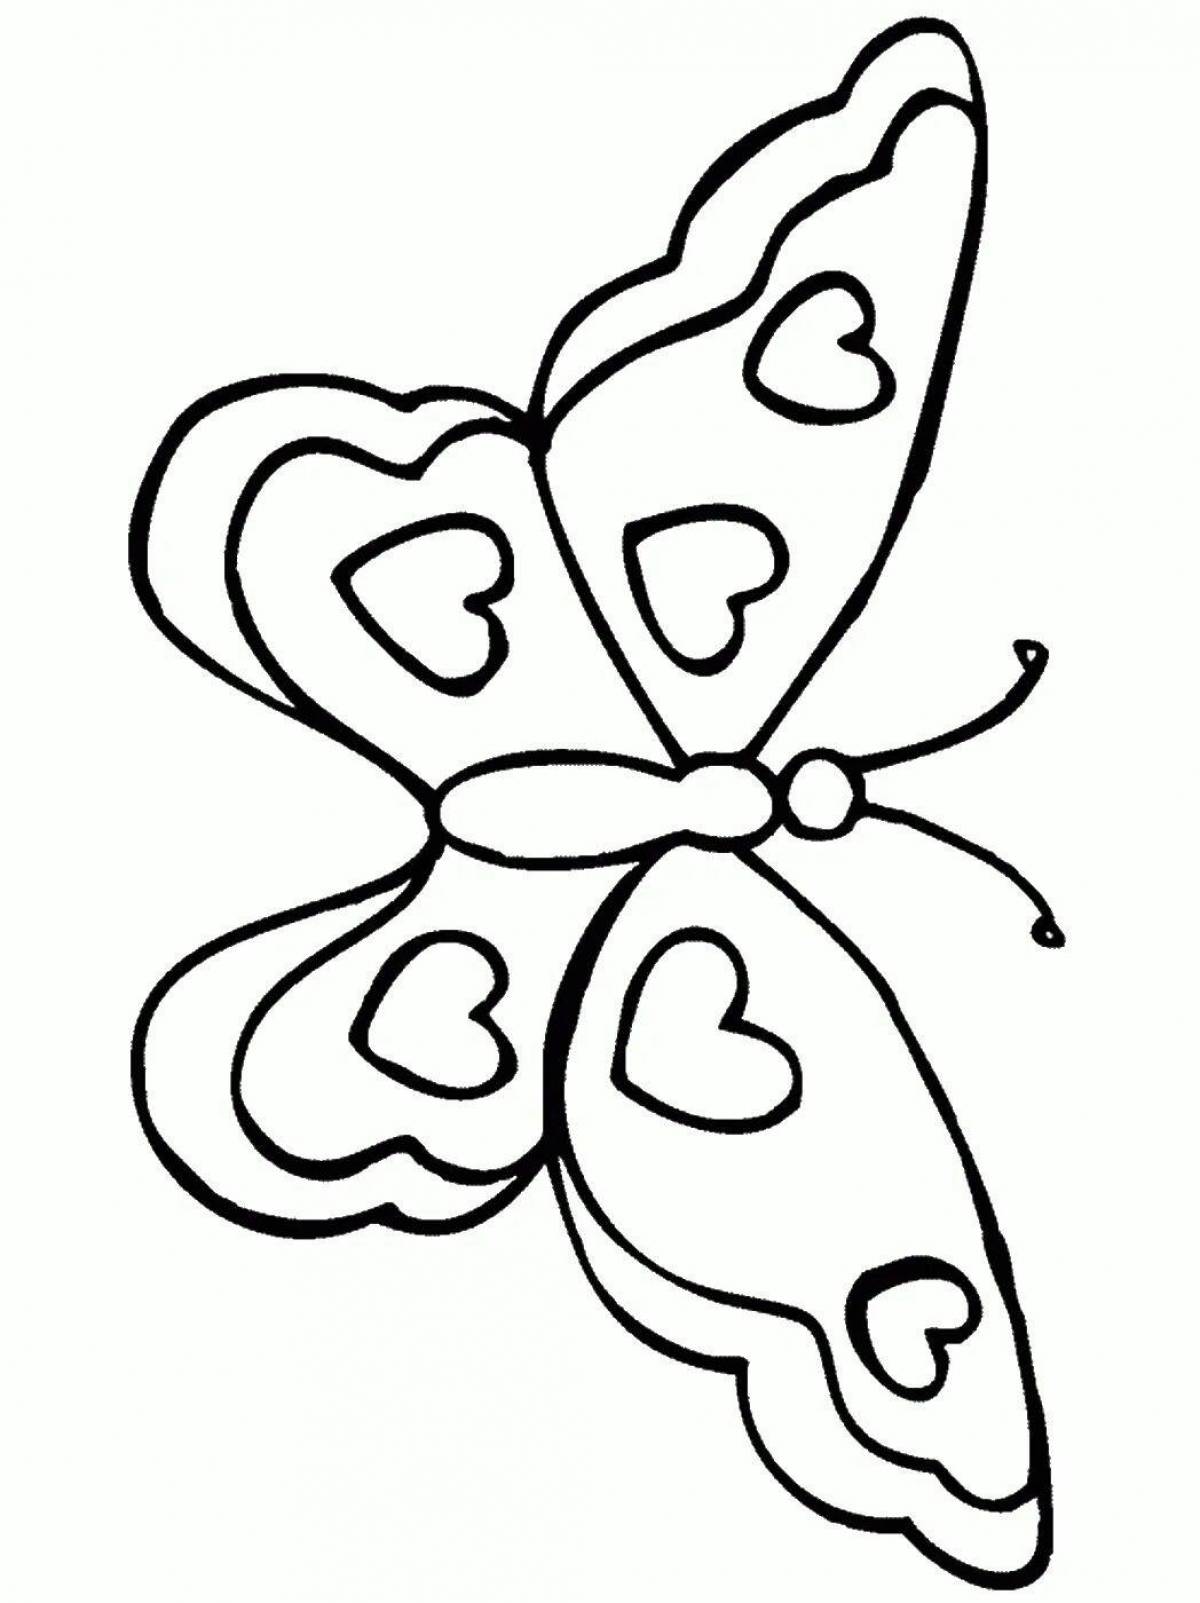 Бабочка скопировать. Бабочка раскраска для детей. Трафареты бабочки. Бабочка трафарет для раскрашивания. Бабочка раскраска трафарет.